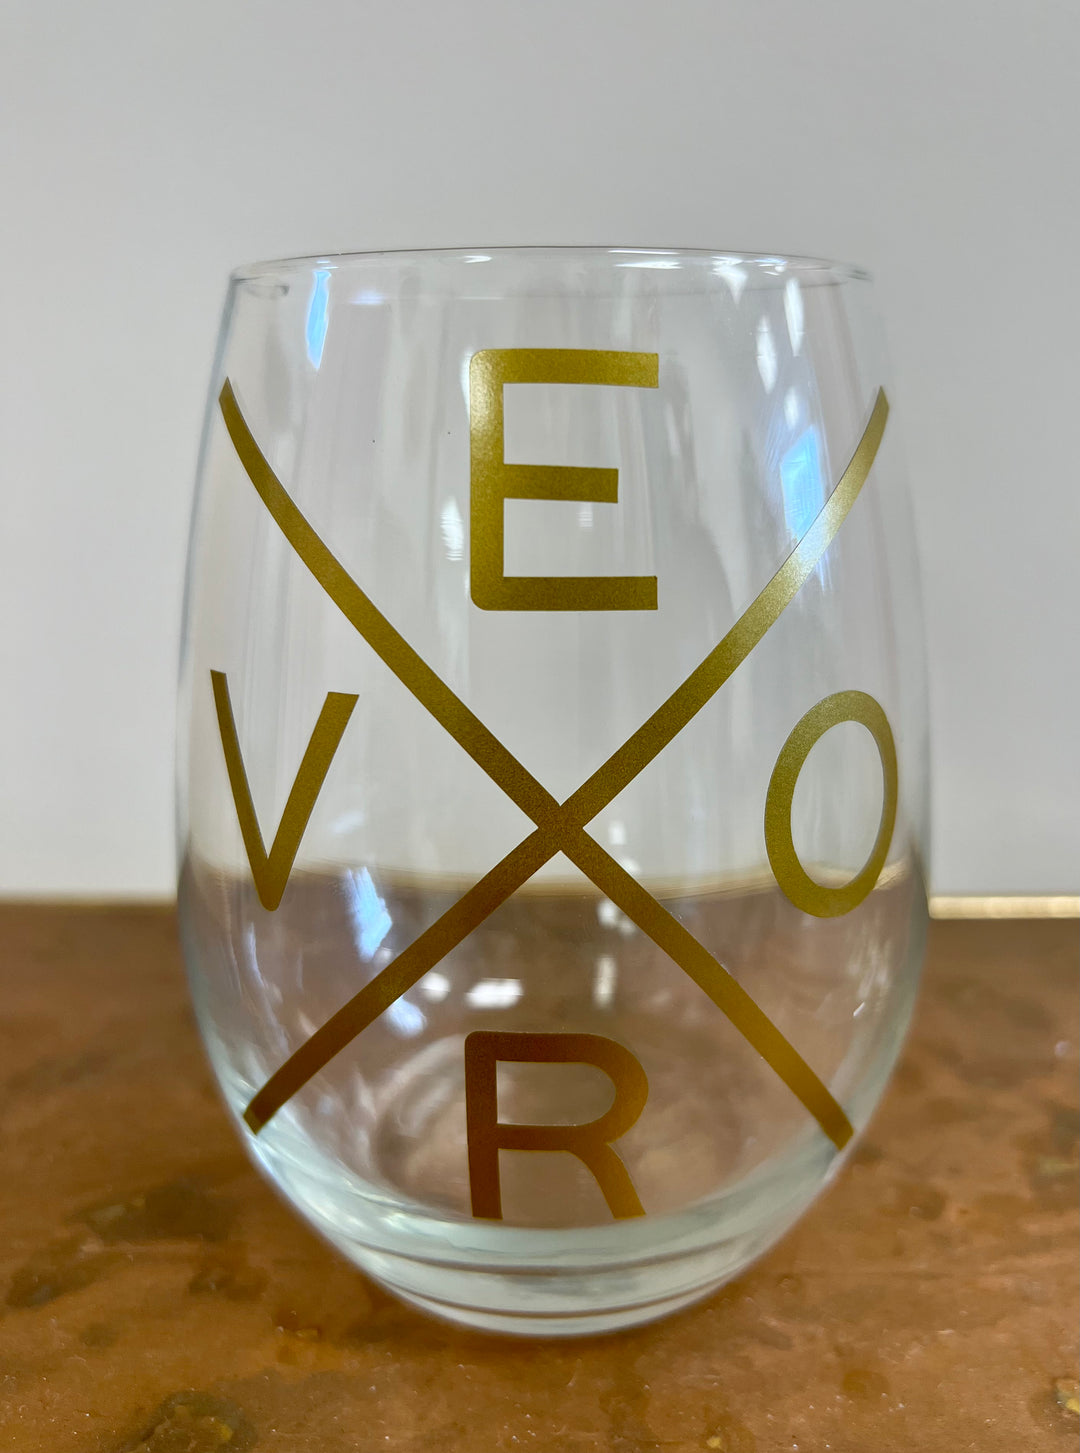 Vero Wine glass